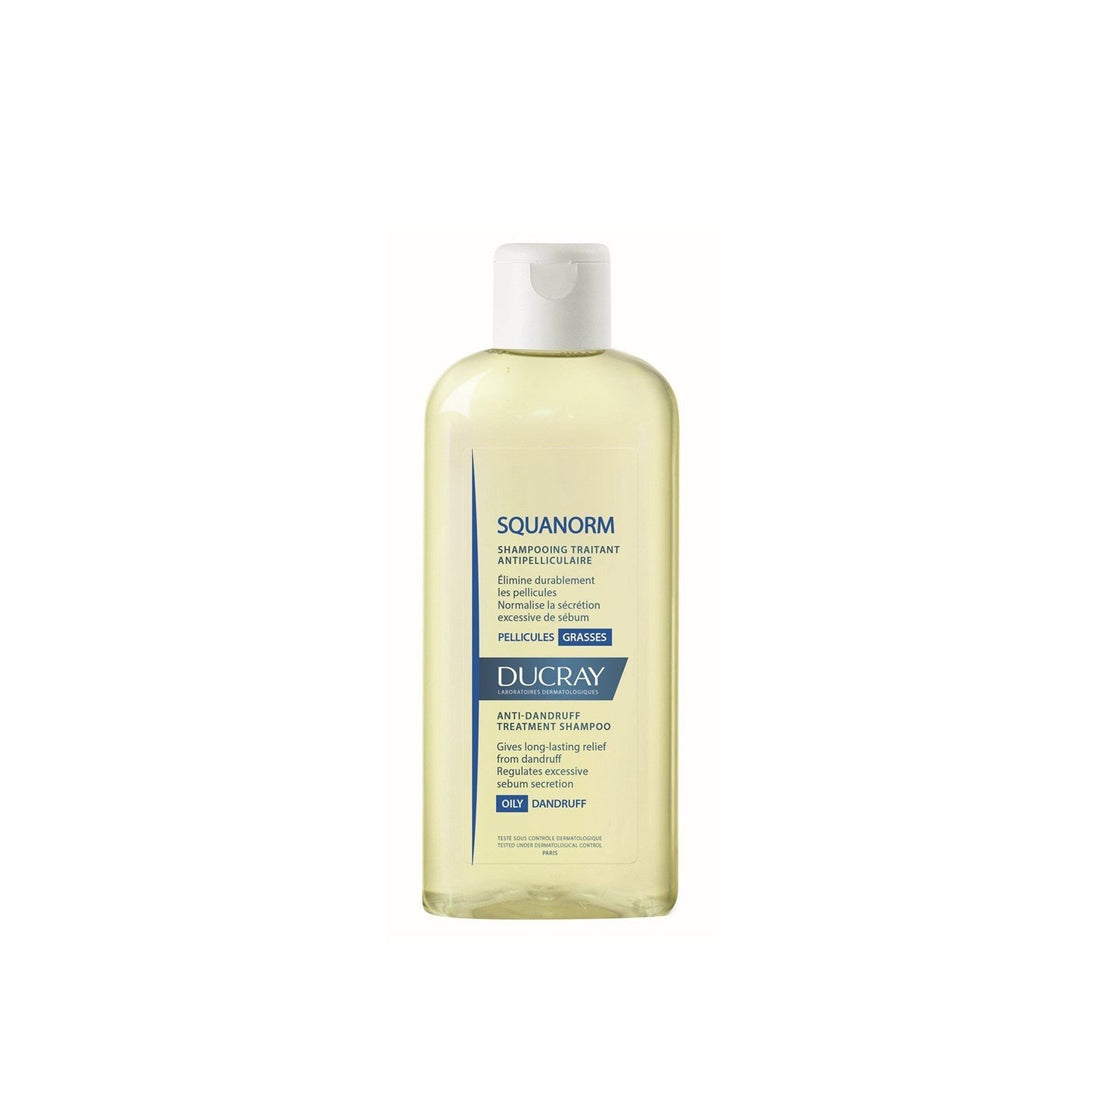 Ducray Squanorm Oily Anti-Dandruff Shampoo 200ml